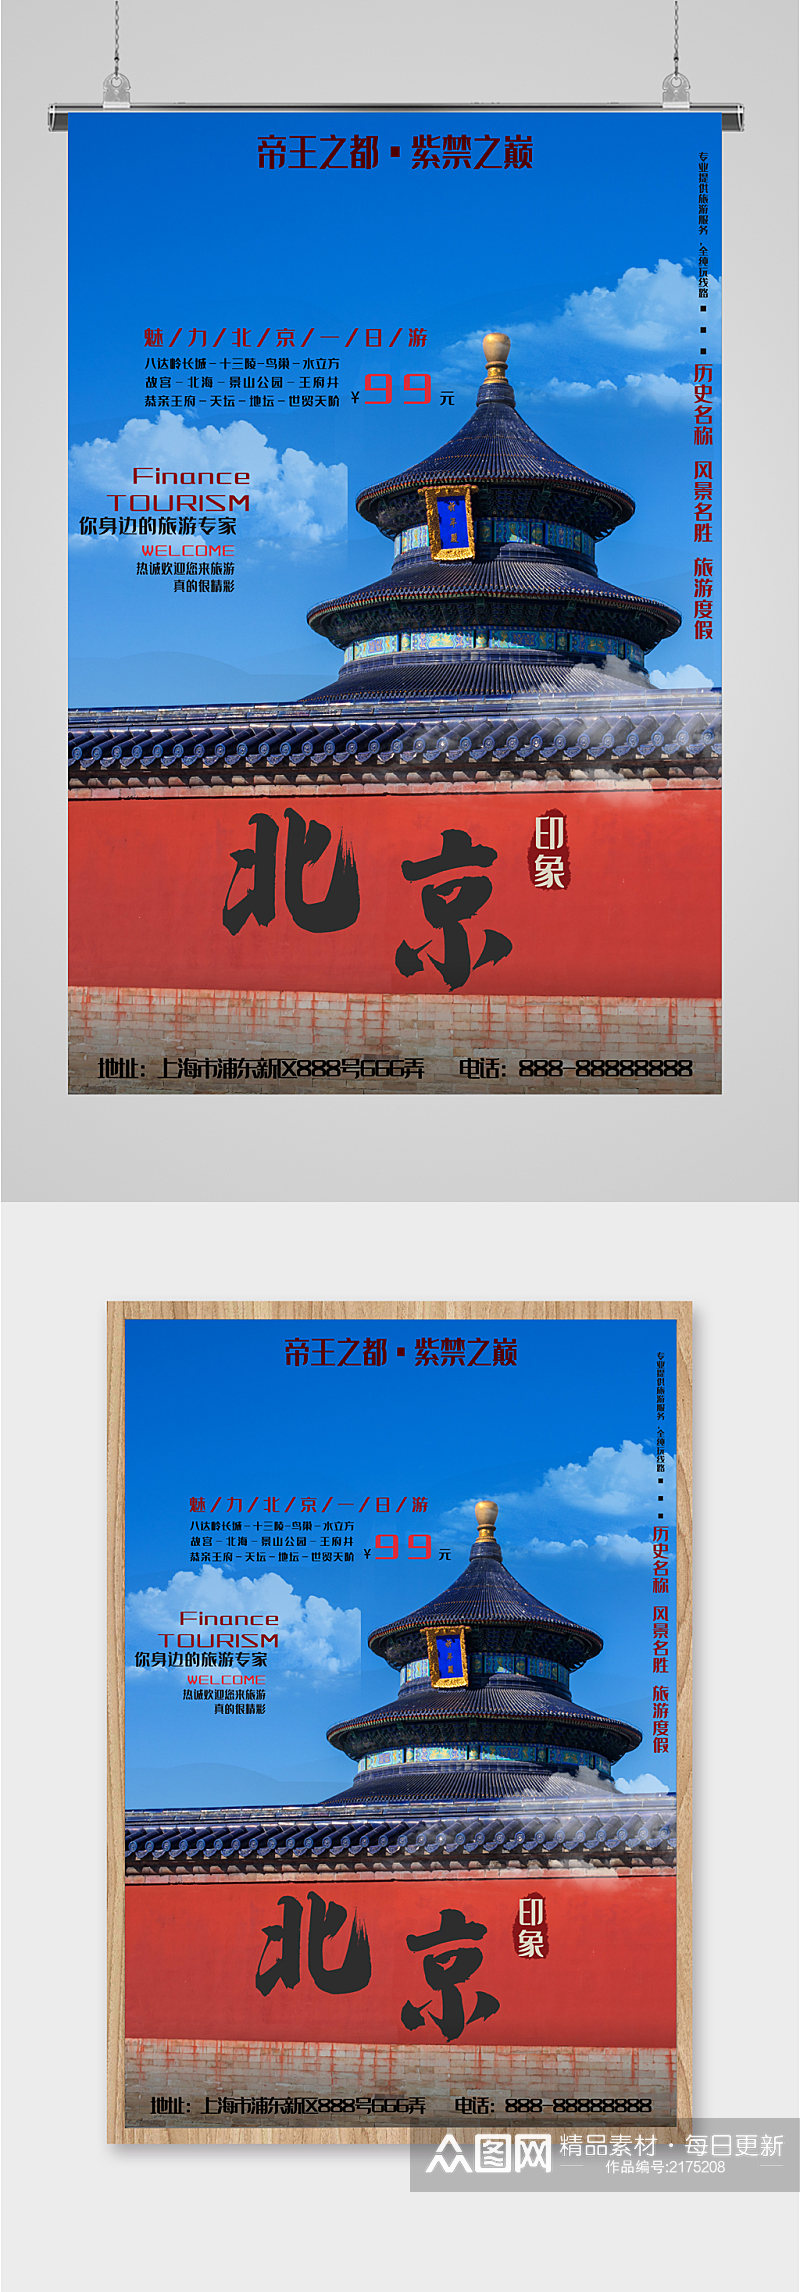 北京风景旅行海报素材